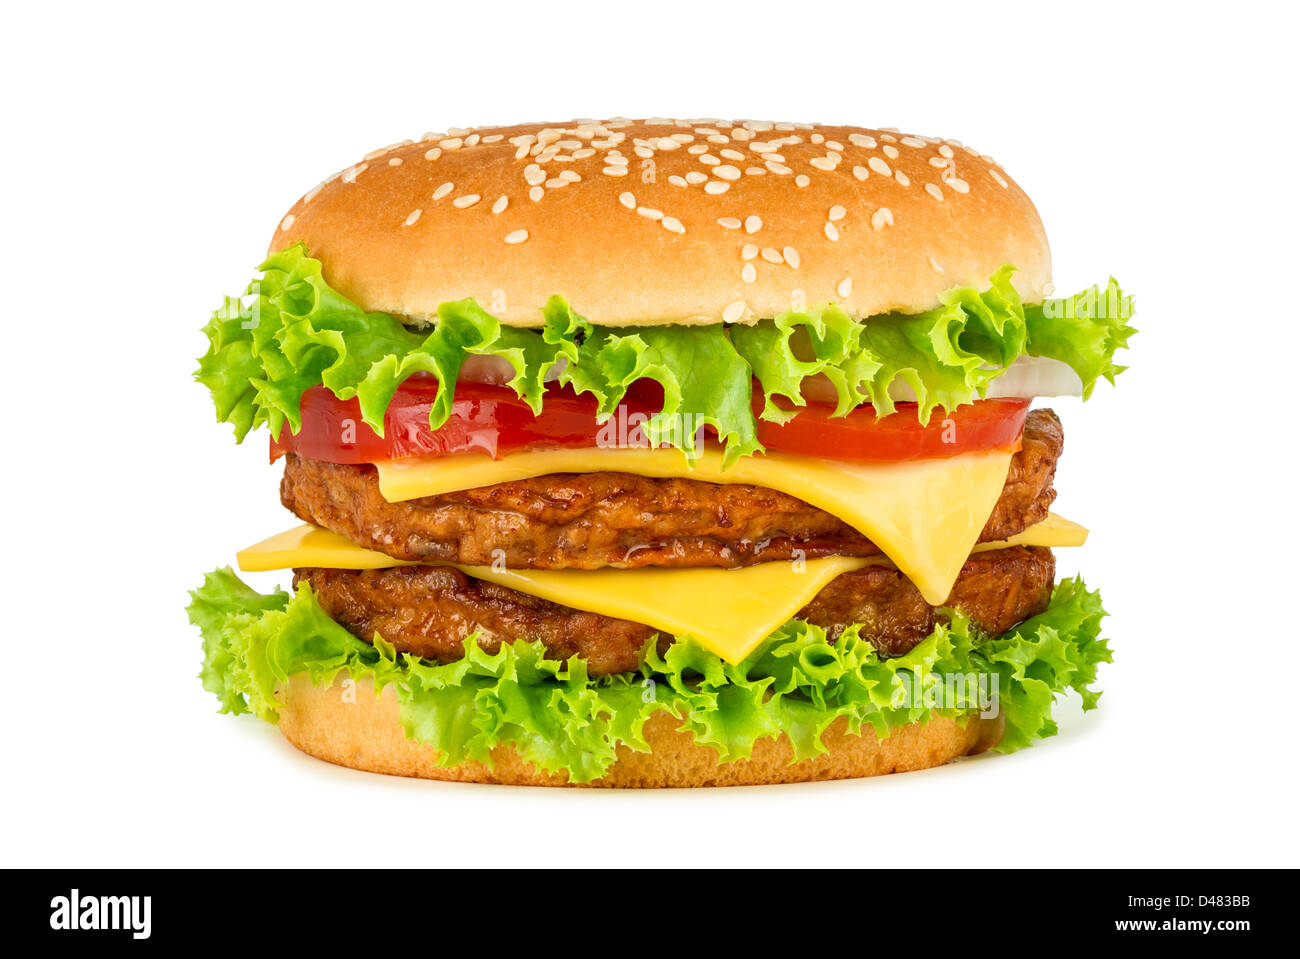 Doublel cheeseburger davanti a uno sfondo bianco Foto Stock